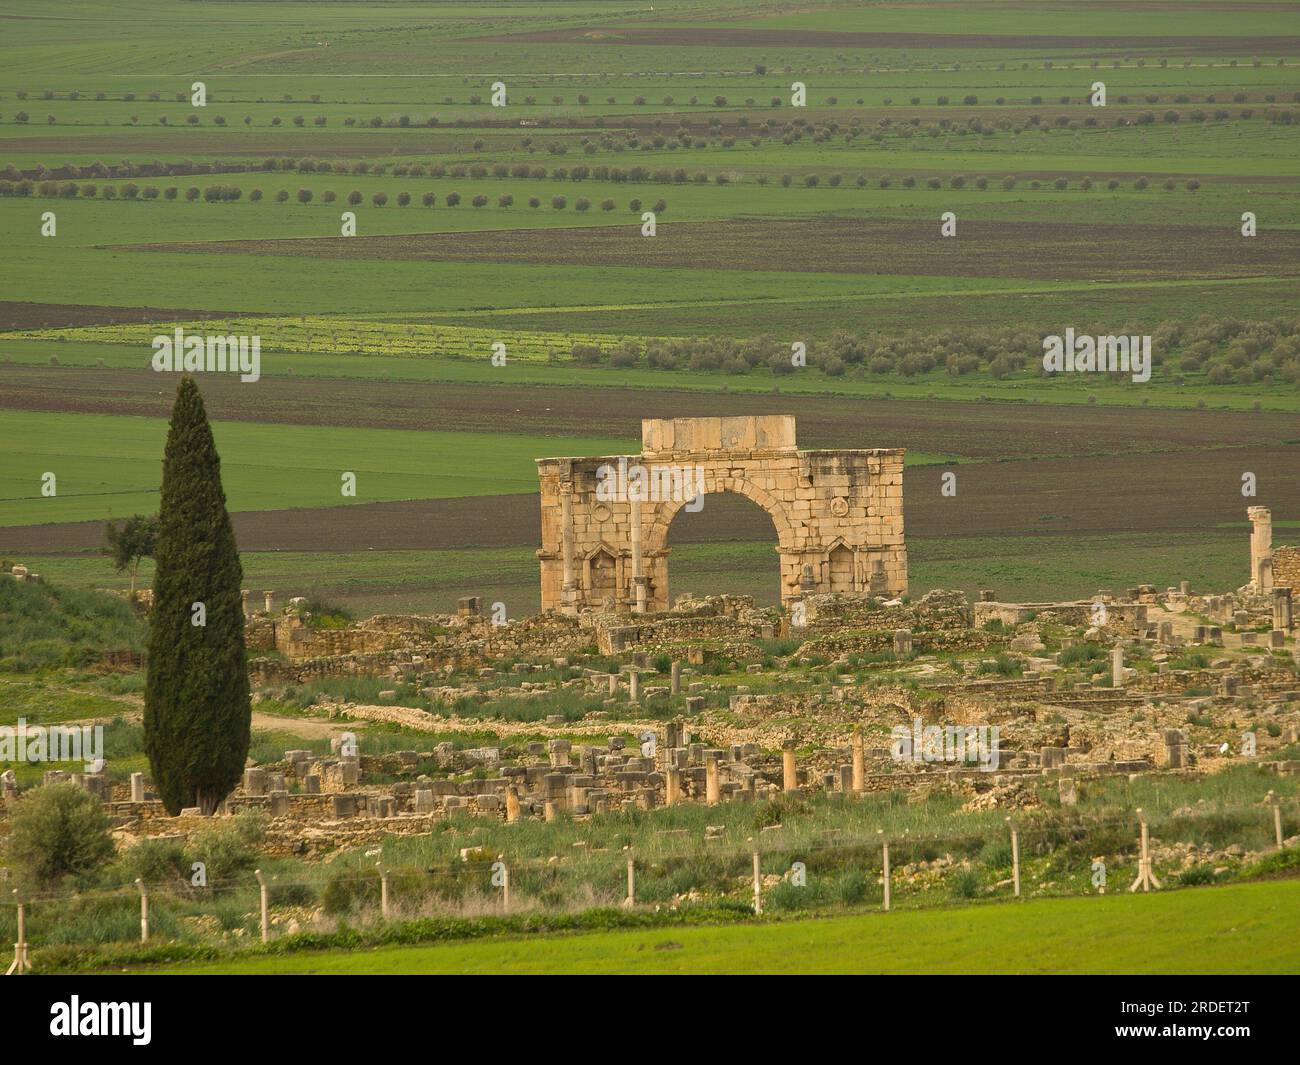 Ciudad Romana de Volubilis(II d.c.), yacimiento arqueologico.Marruecos. Stock Photo